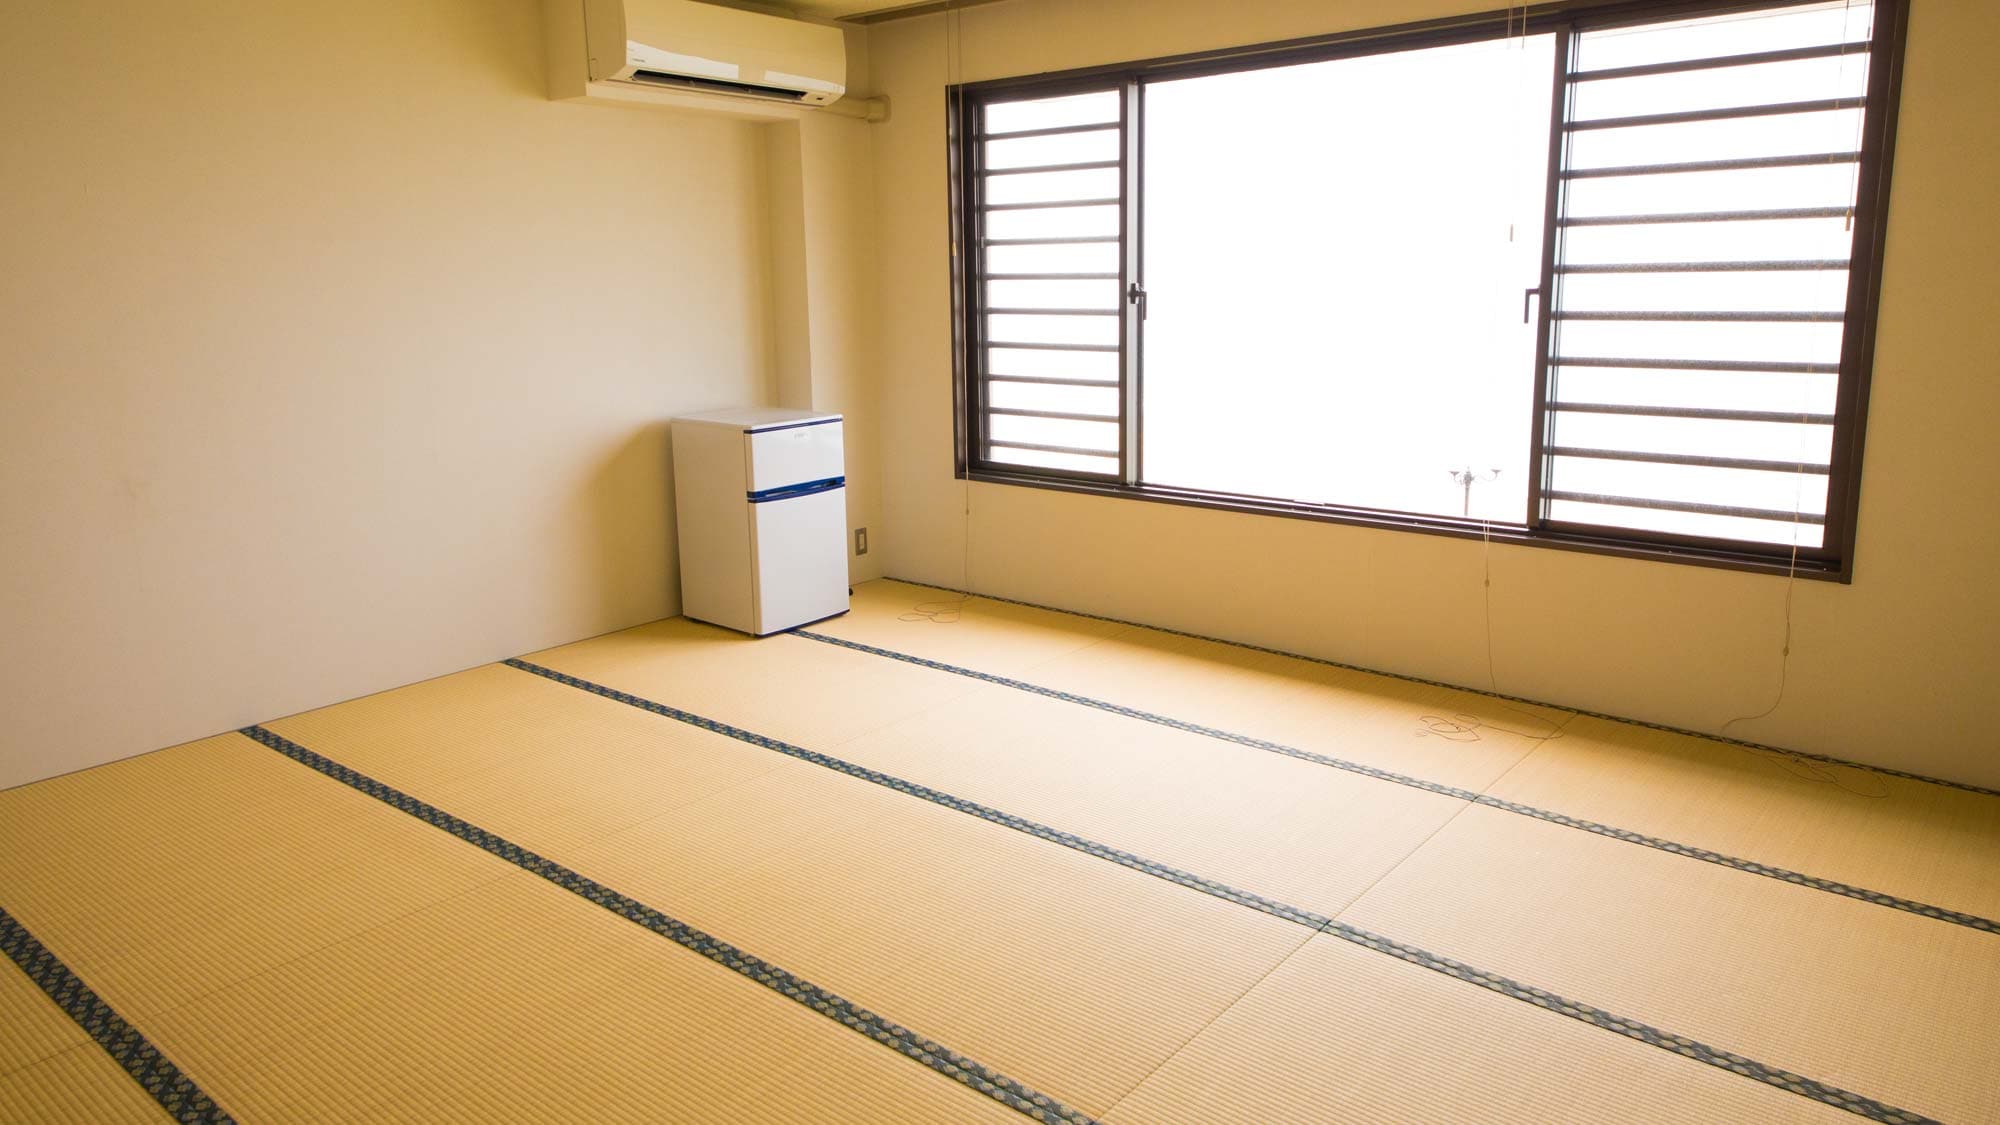 Kamar bergaya Jepang 15 tikar tatami